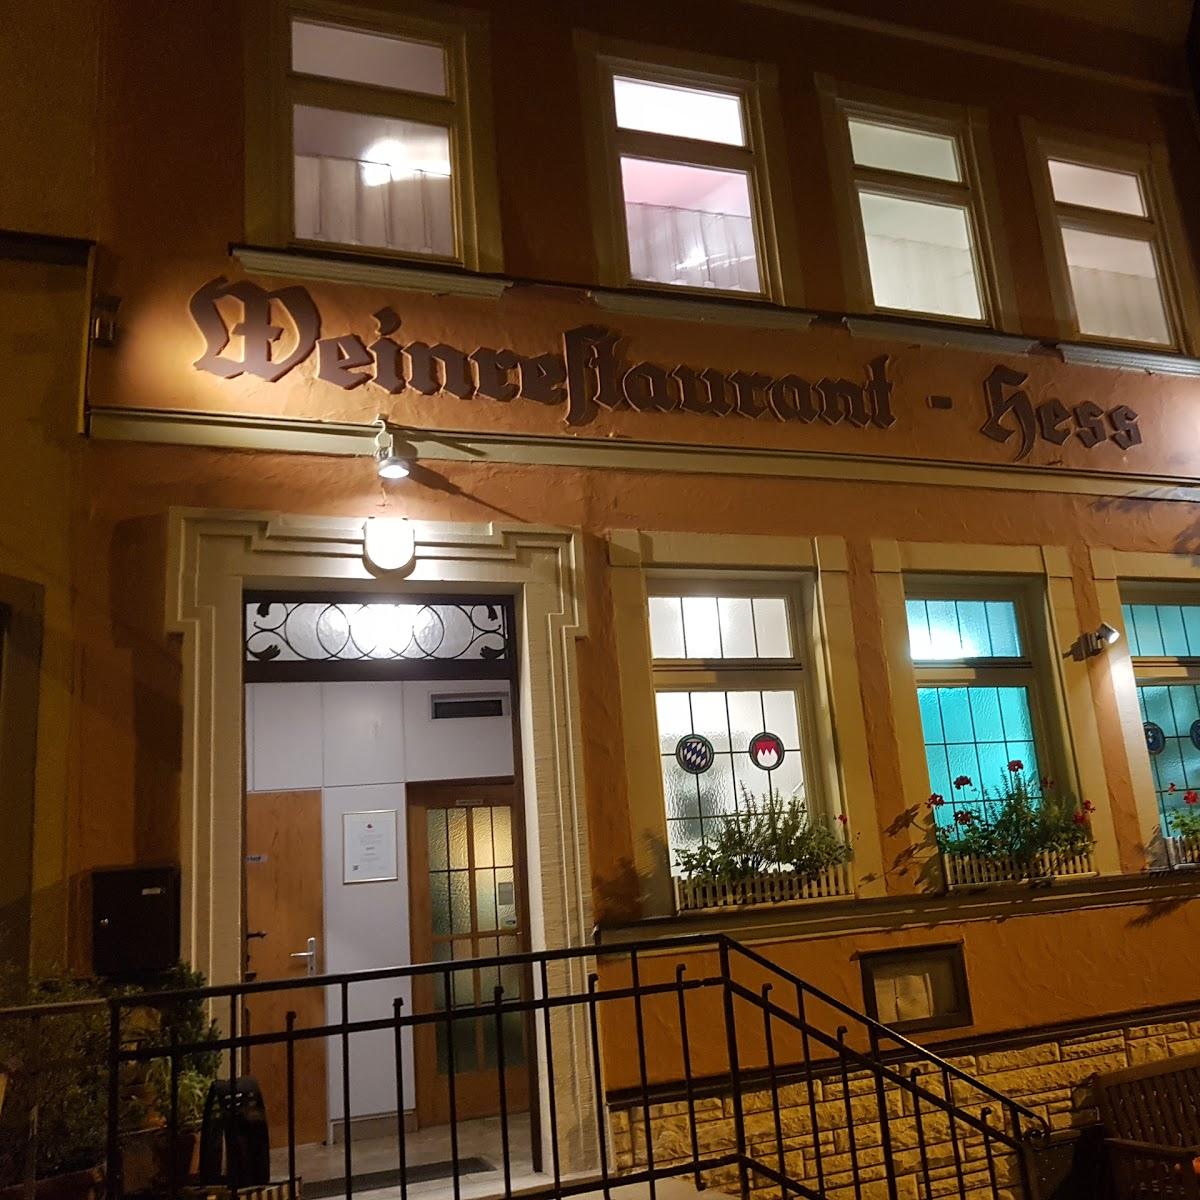 Restaurant "Weinstube-Restaurant Hess" in  Schweinfurt